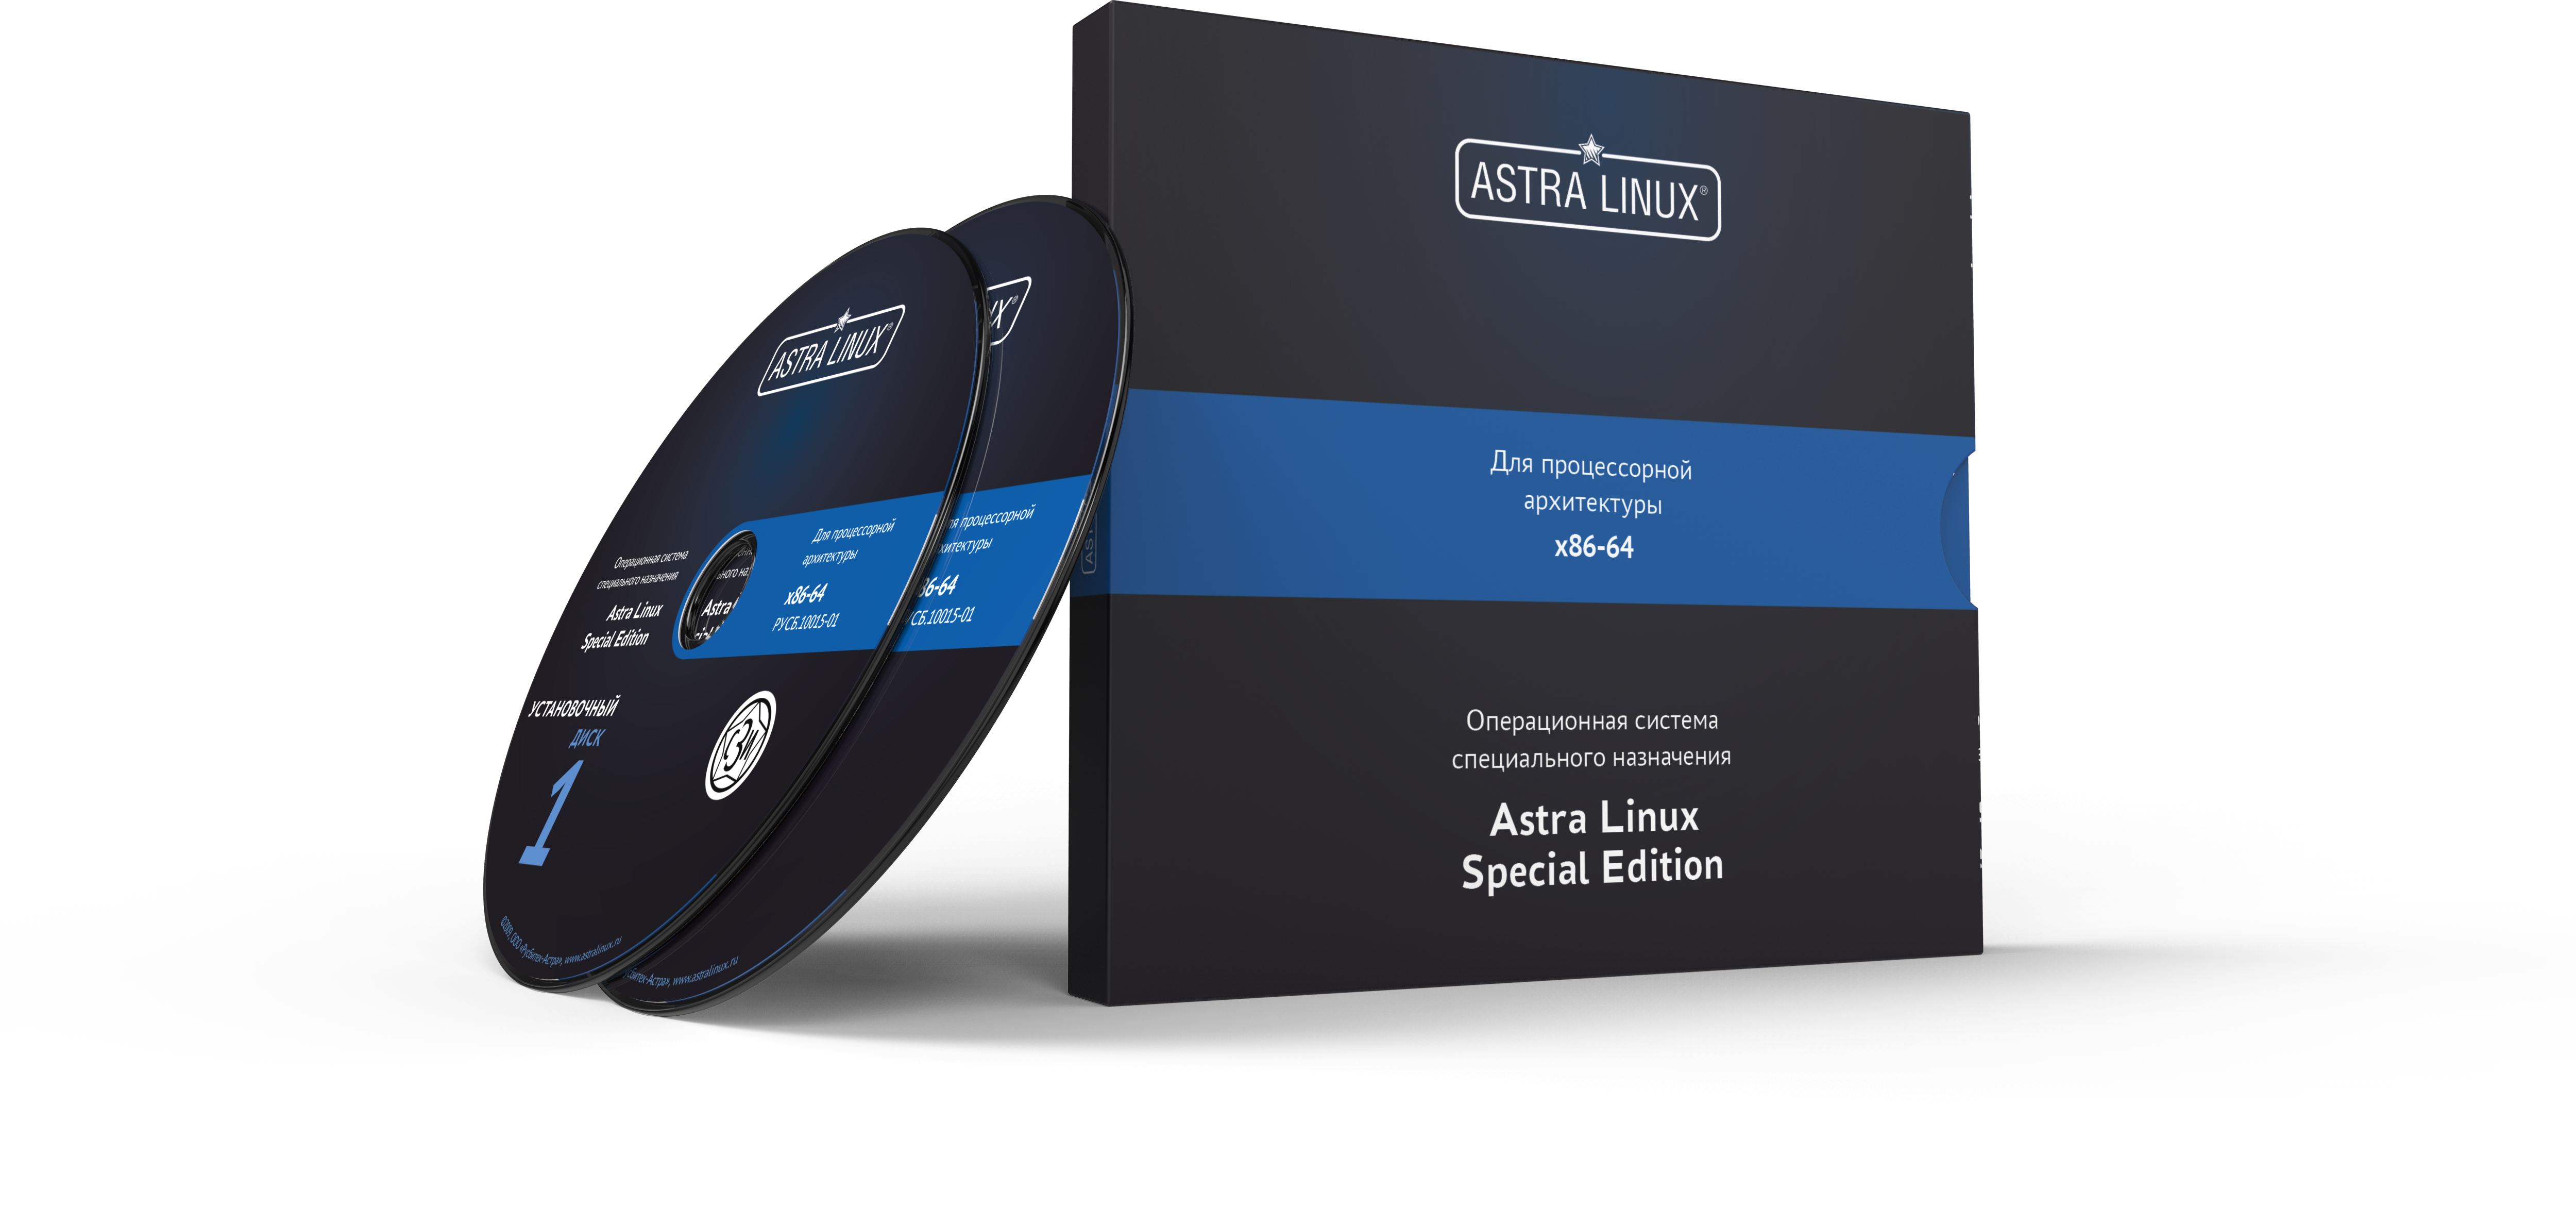 Astra Linux Special Edition 1.7 - Орел, электронный, на 12 мес., ТП "Привилегированная" на 12 мес.